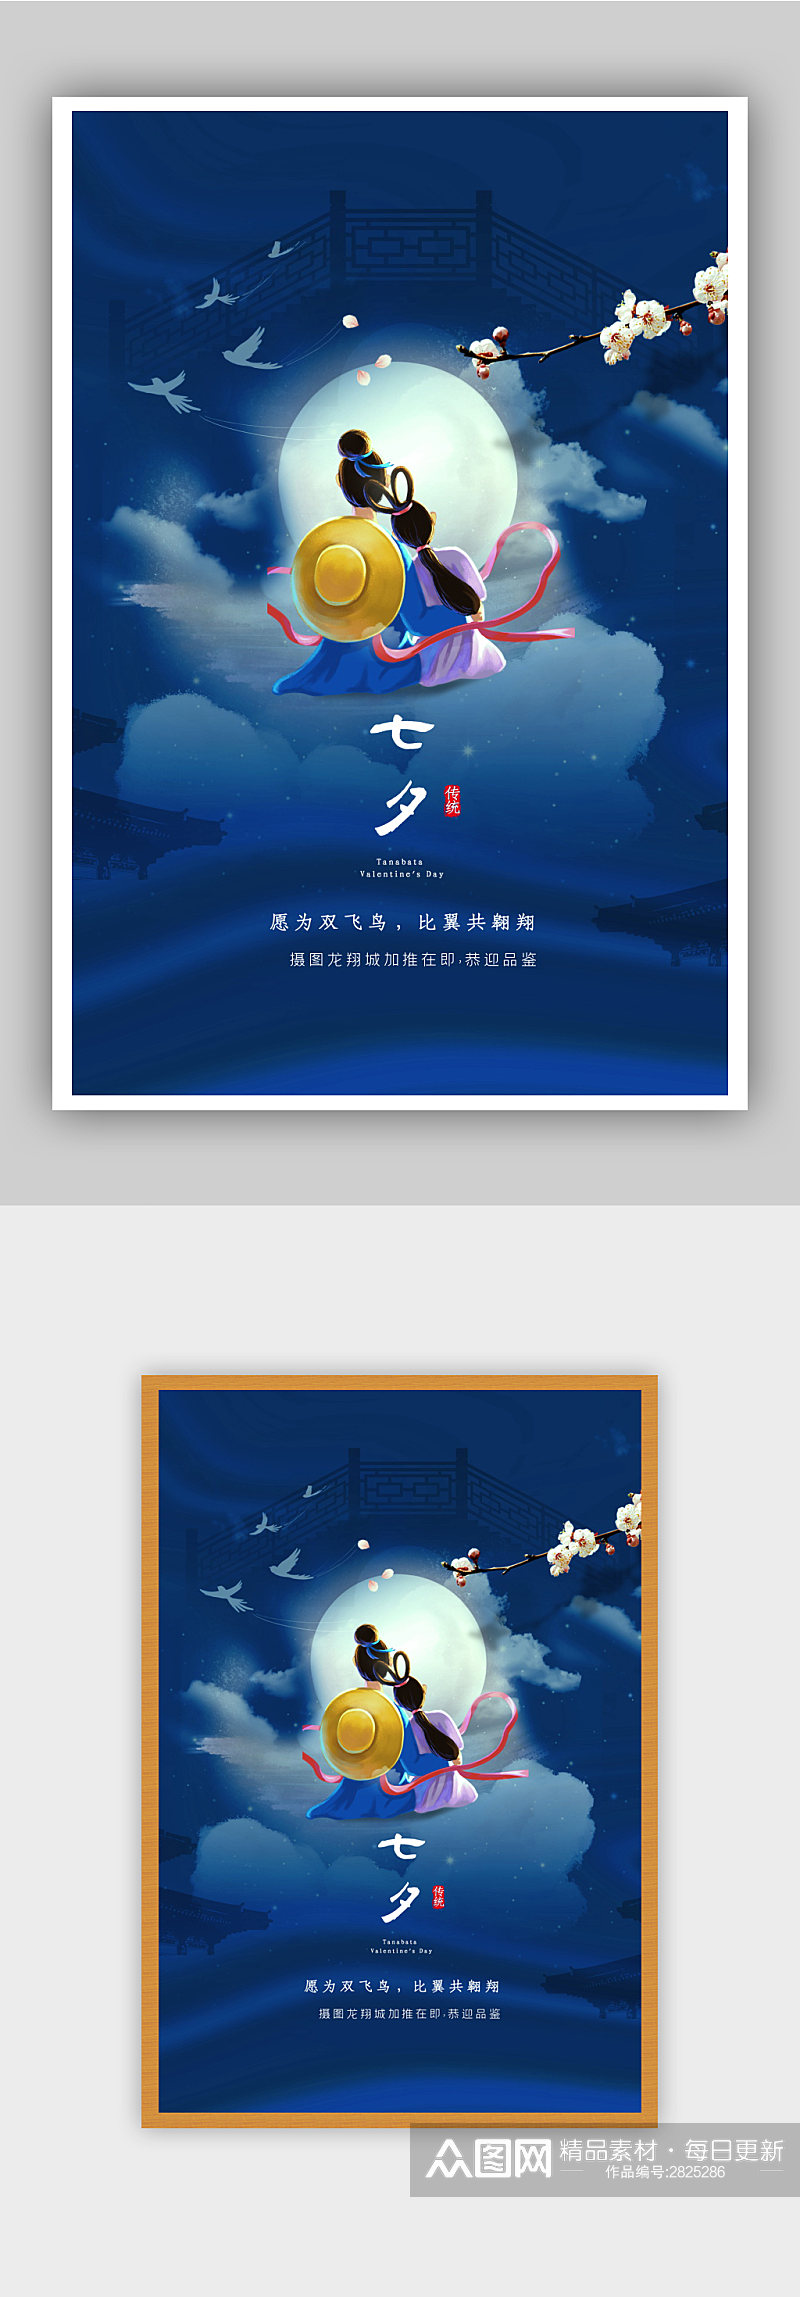 中国风梦幻唯美七夕宣传海报设计素材